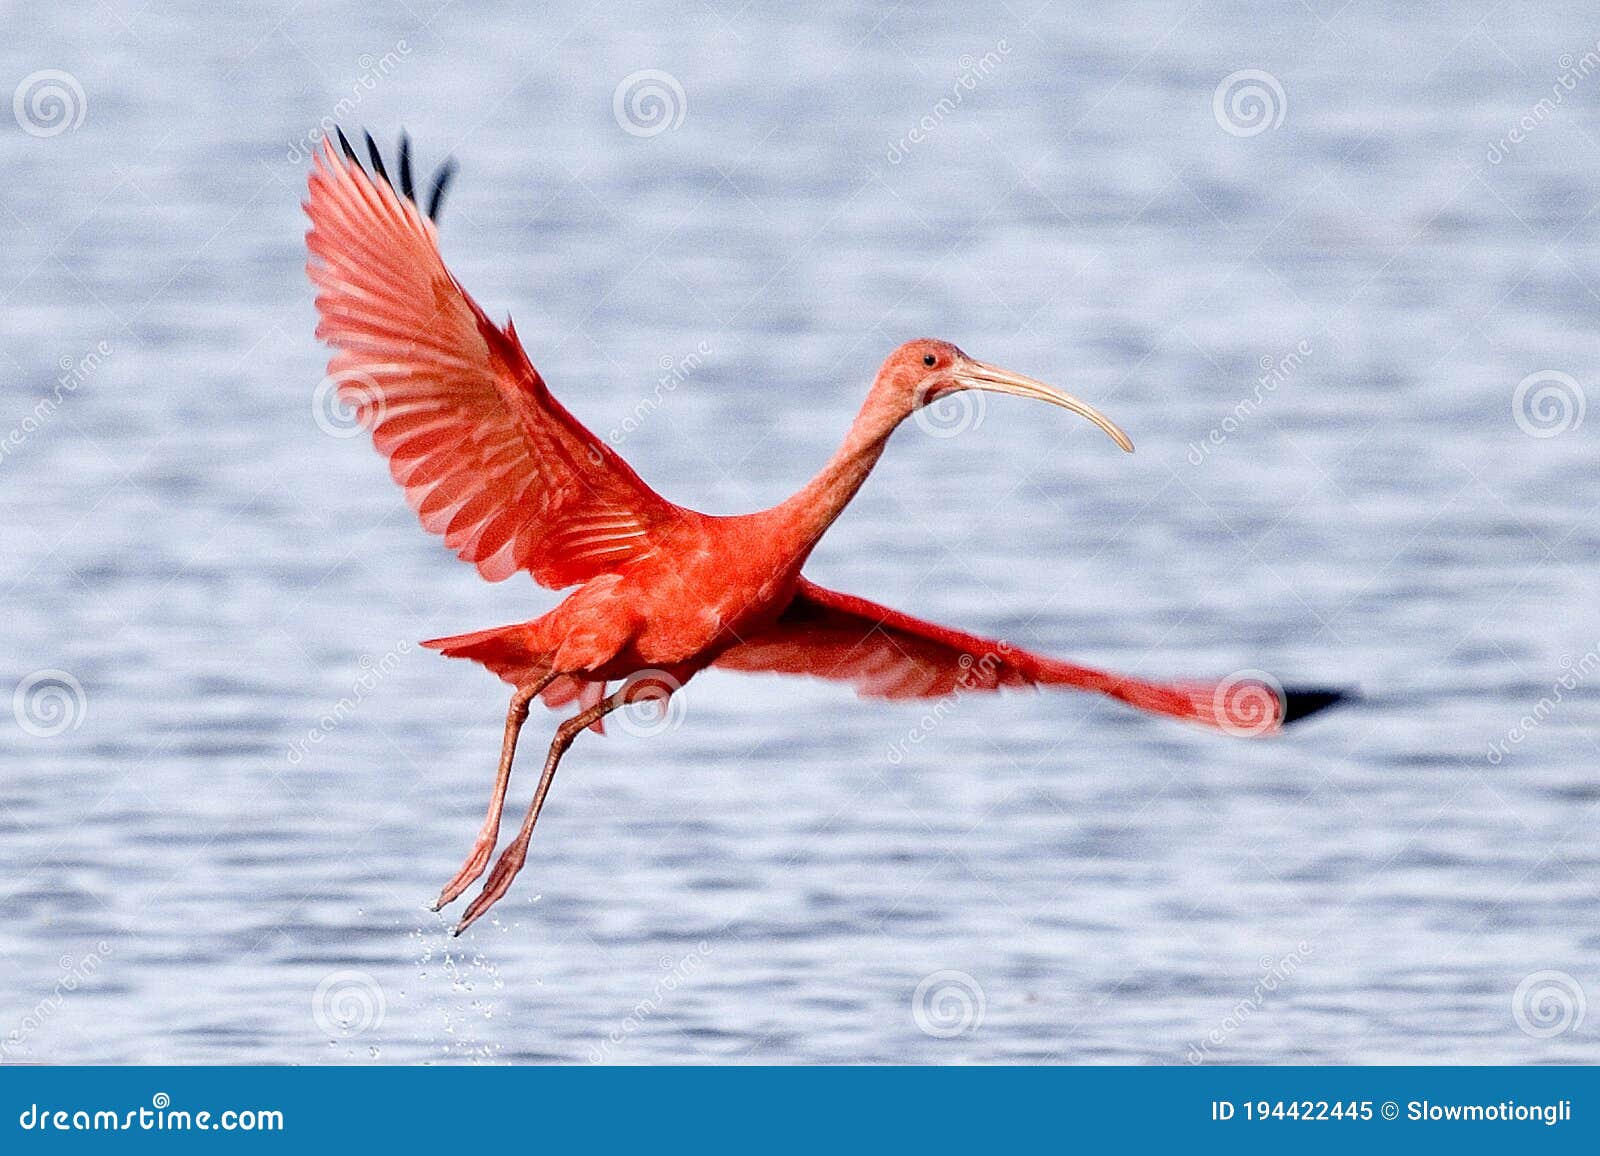 scarlet ibis eudocimus ruber, adult in flight above water, los lianos in venezuela